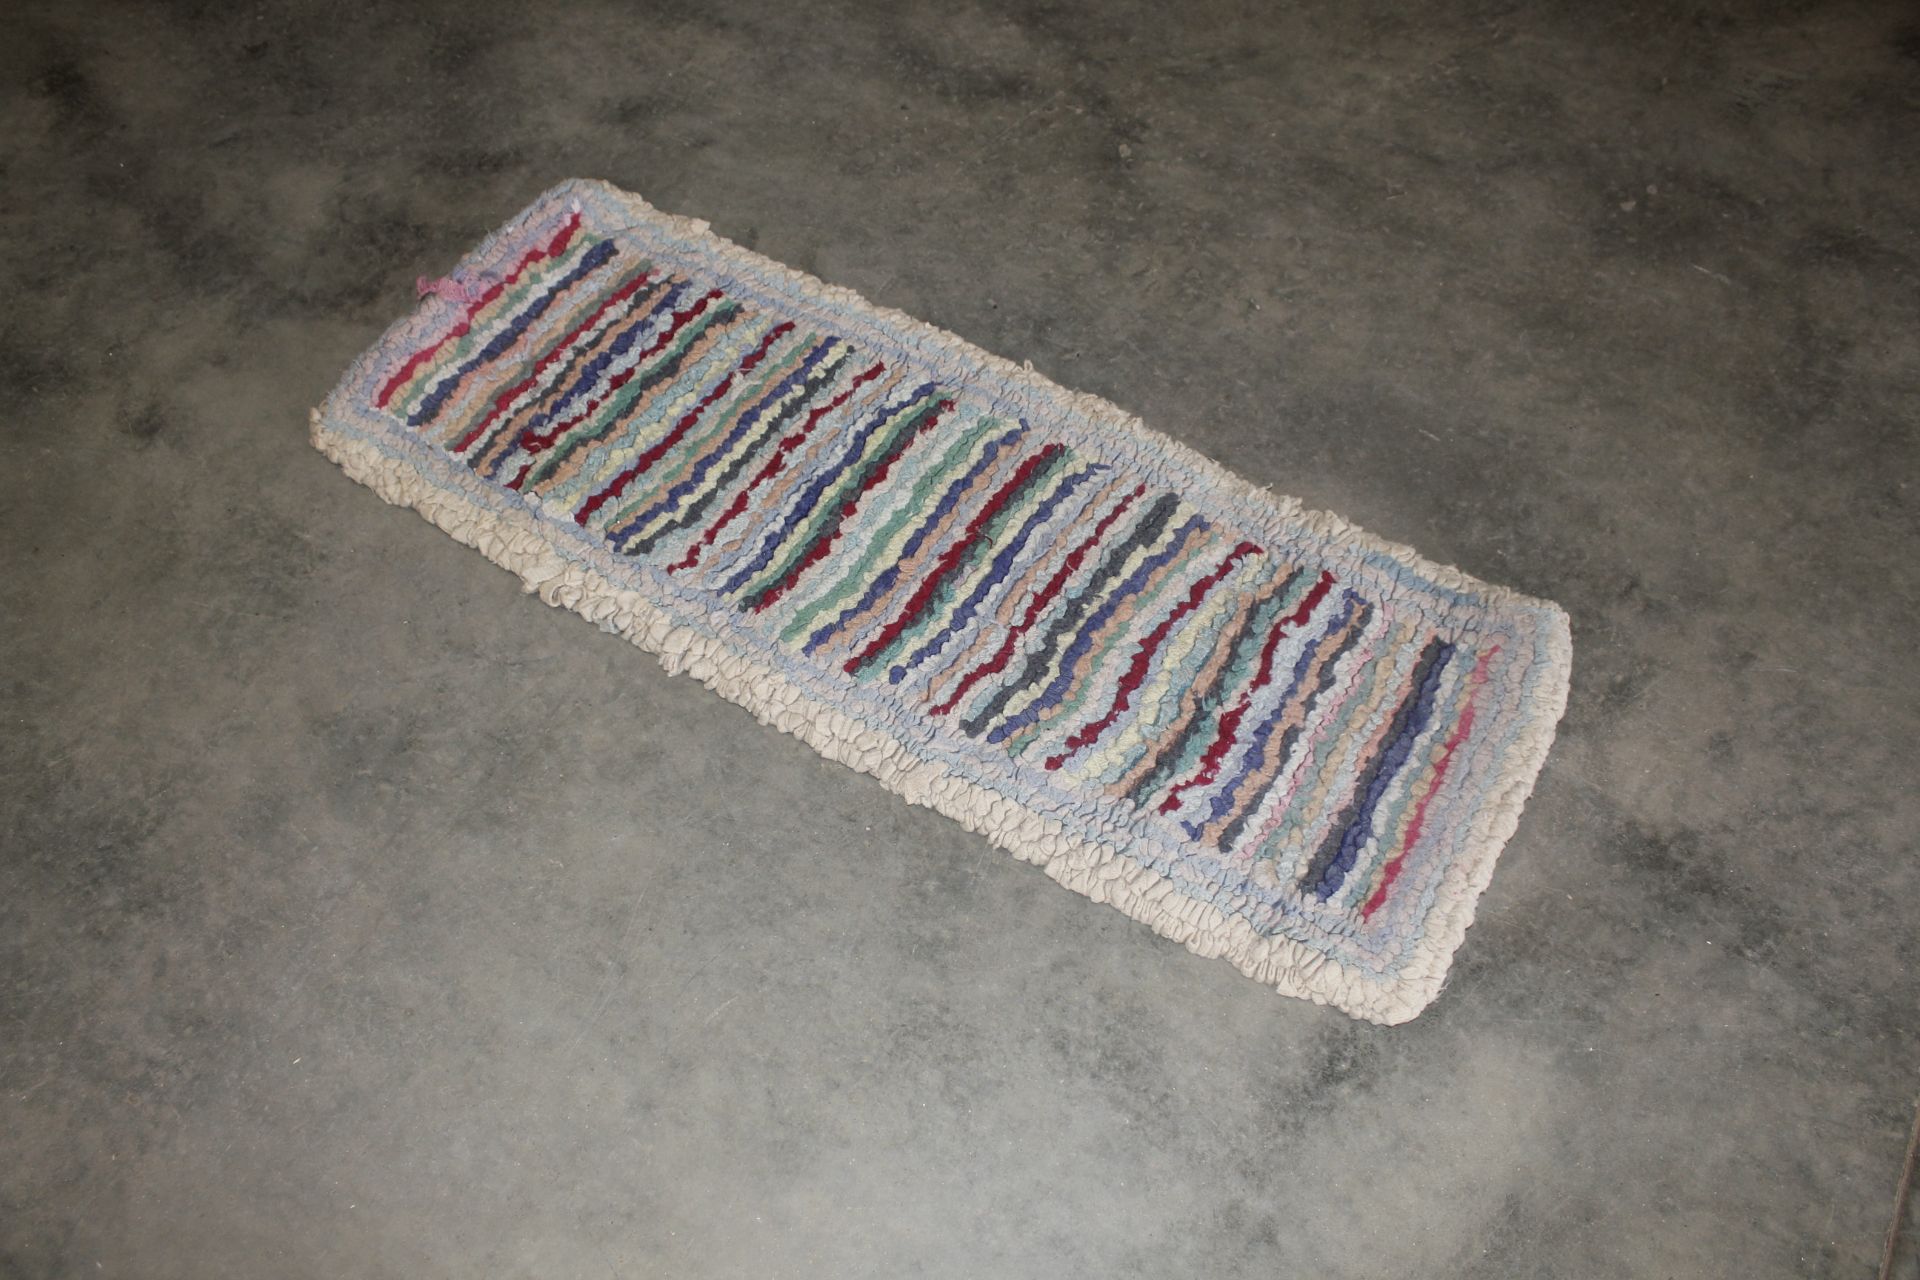 A rag rug approx. 3'10" x 1'7"